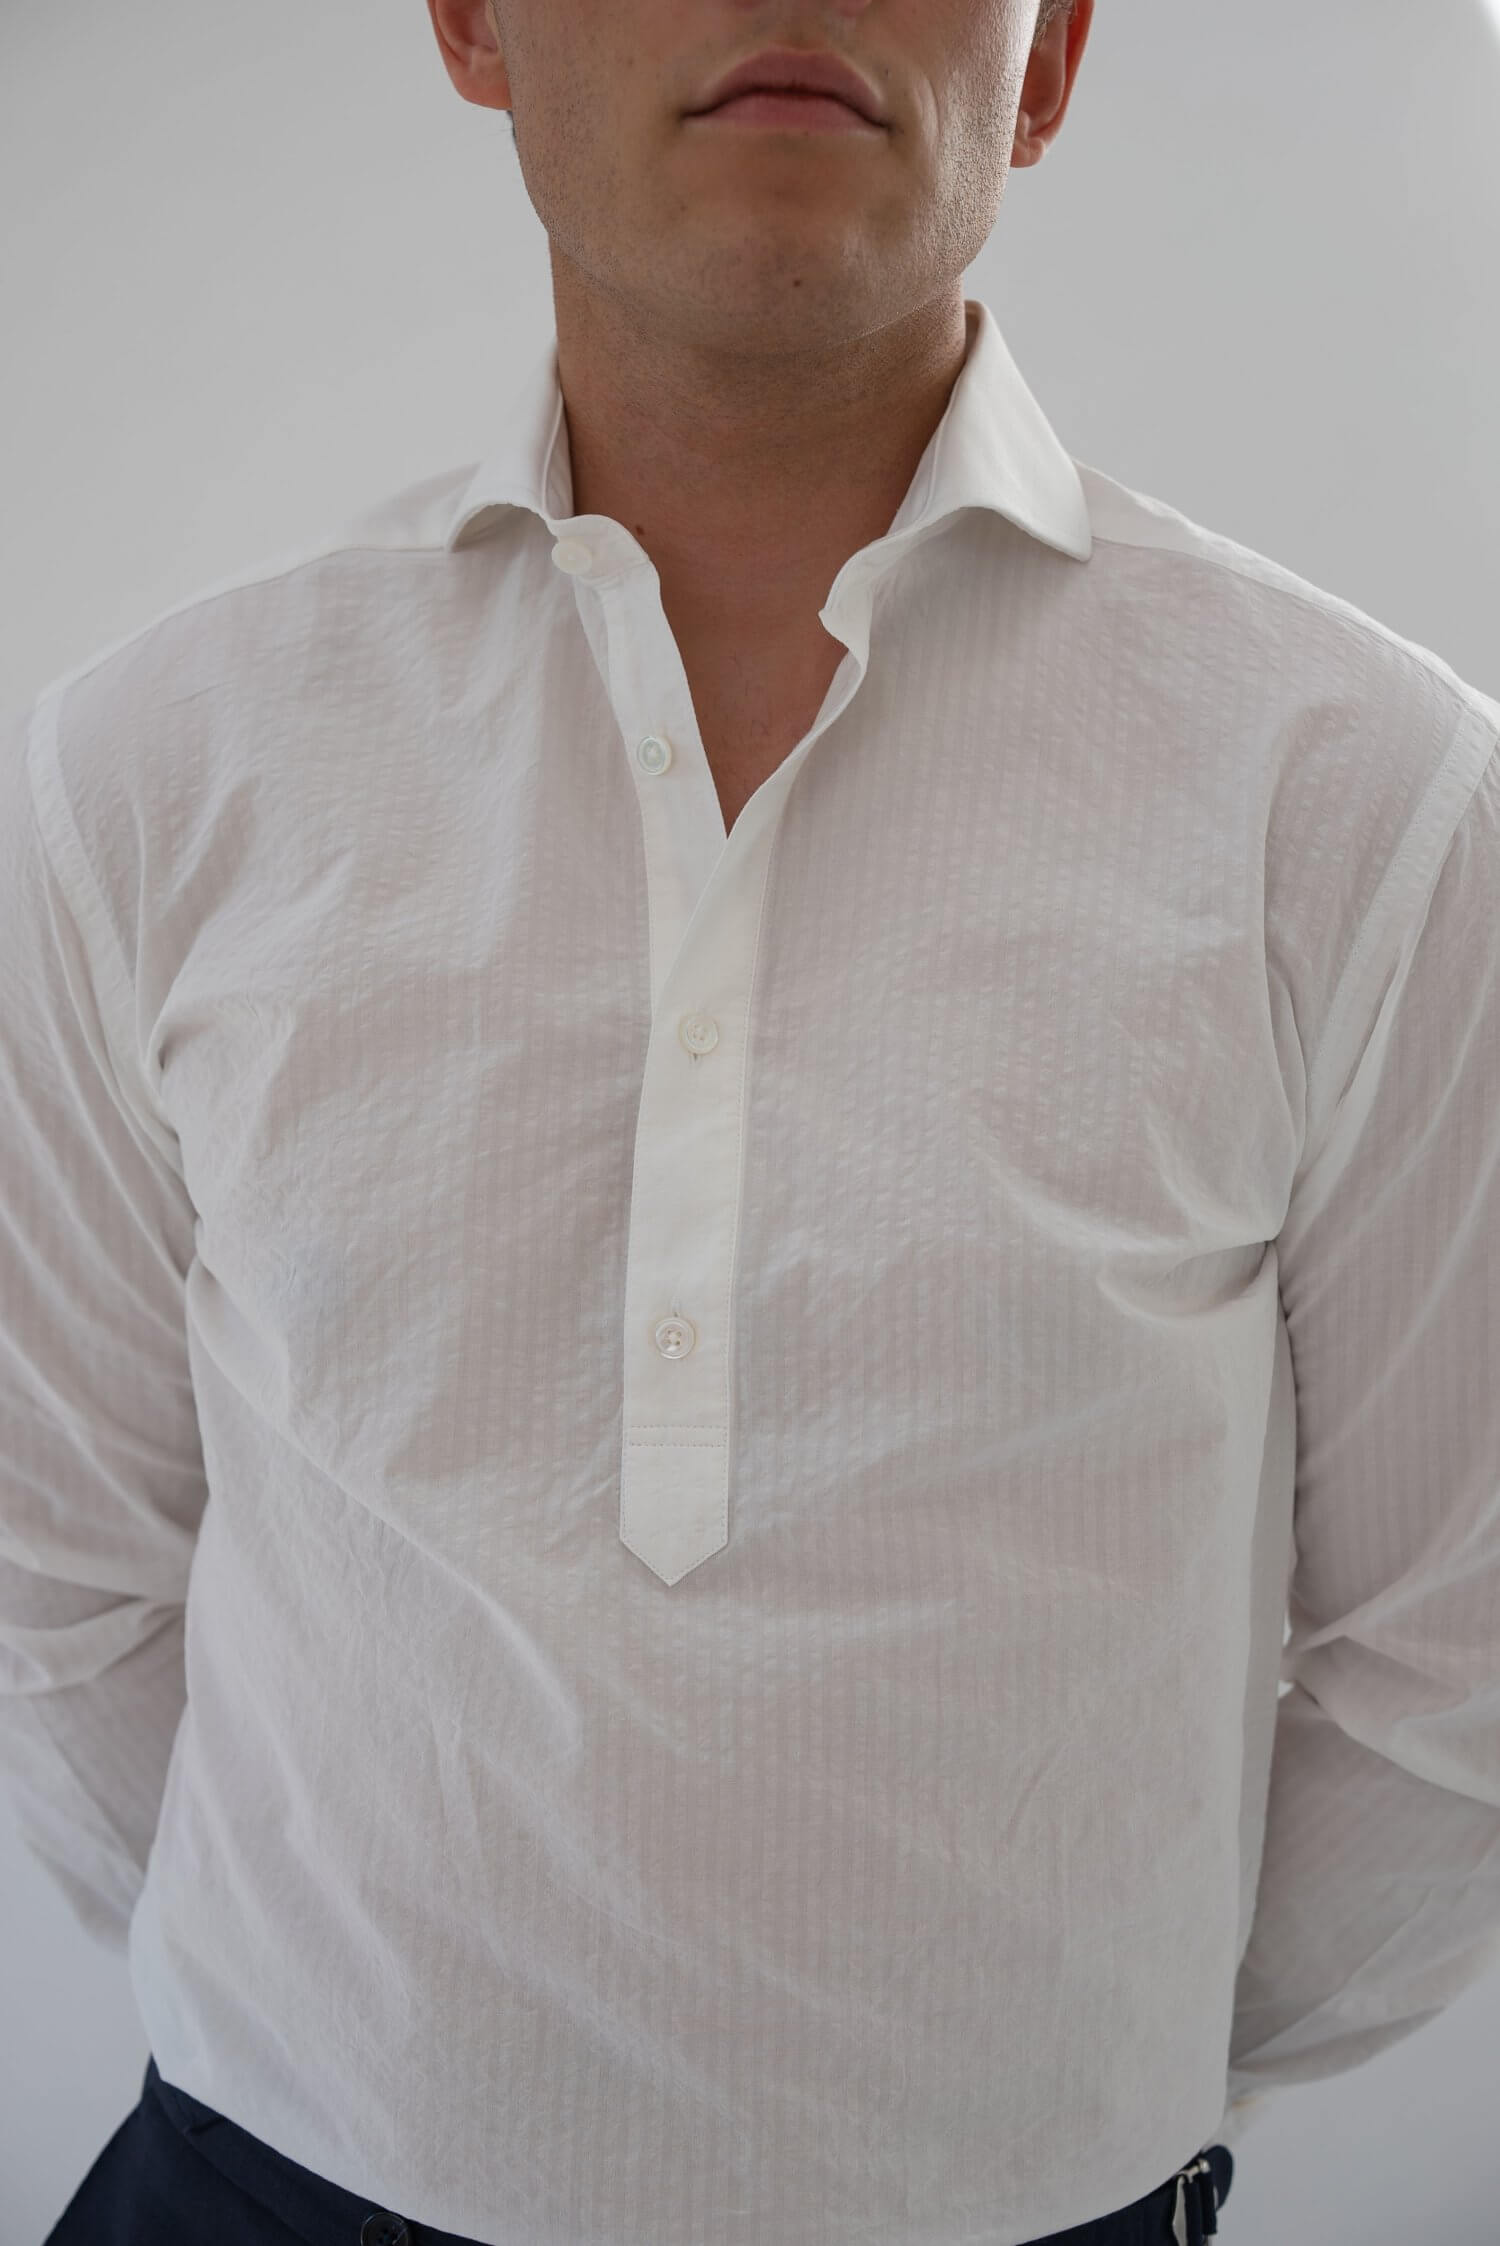 off-white seersucker shirt